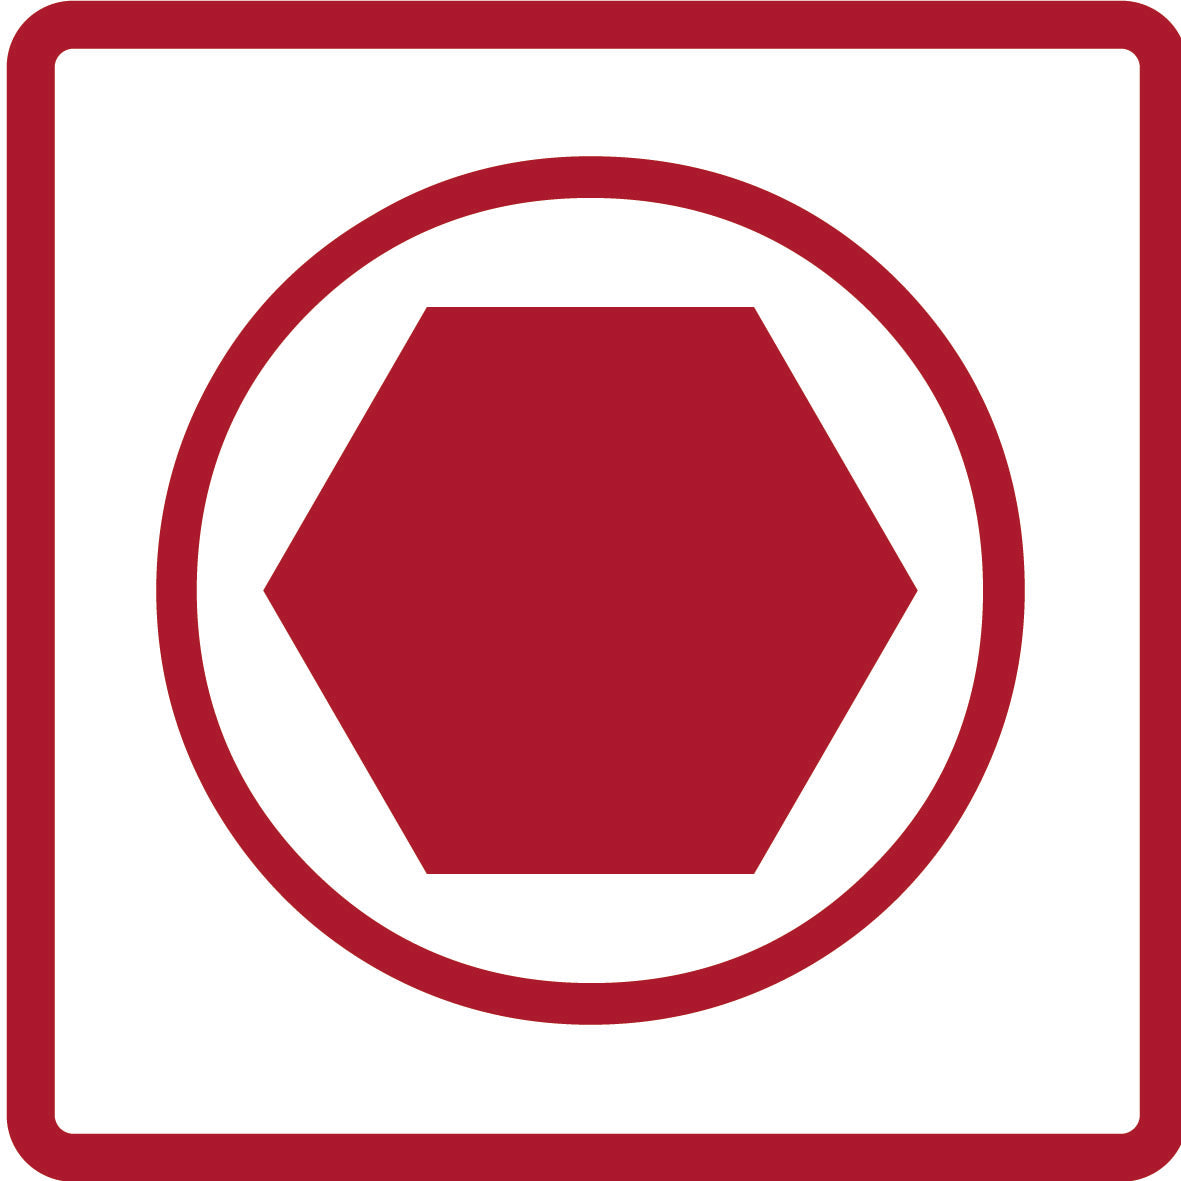 GEDORE rouge R48008013 - Douilles tournevis 1/4" avec rail, 13 pièces (3300022)